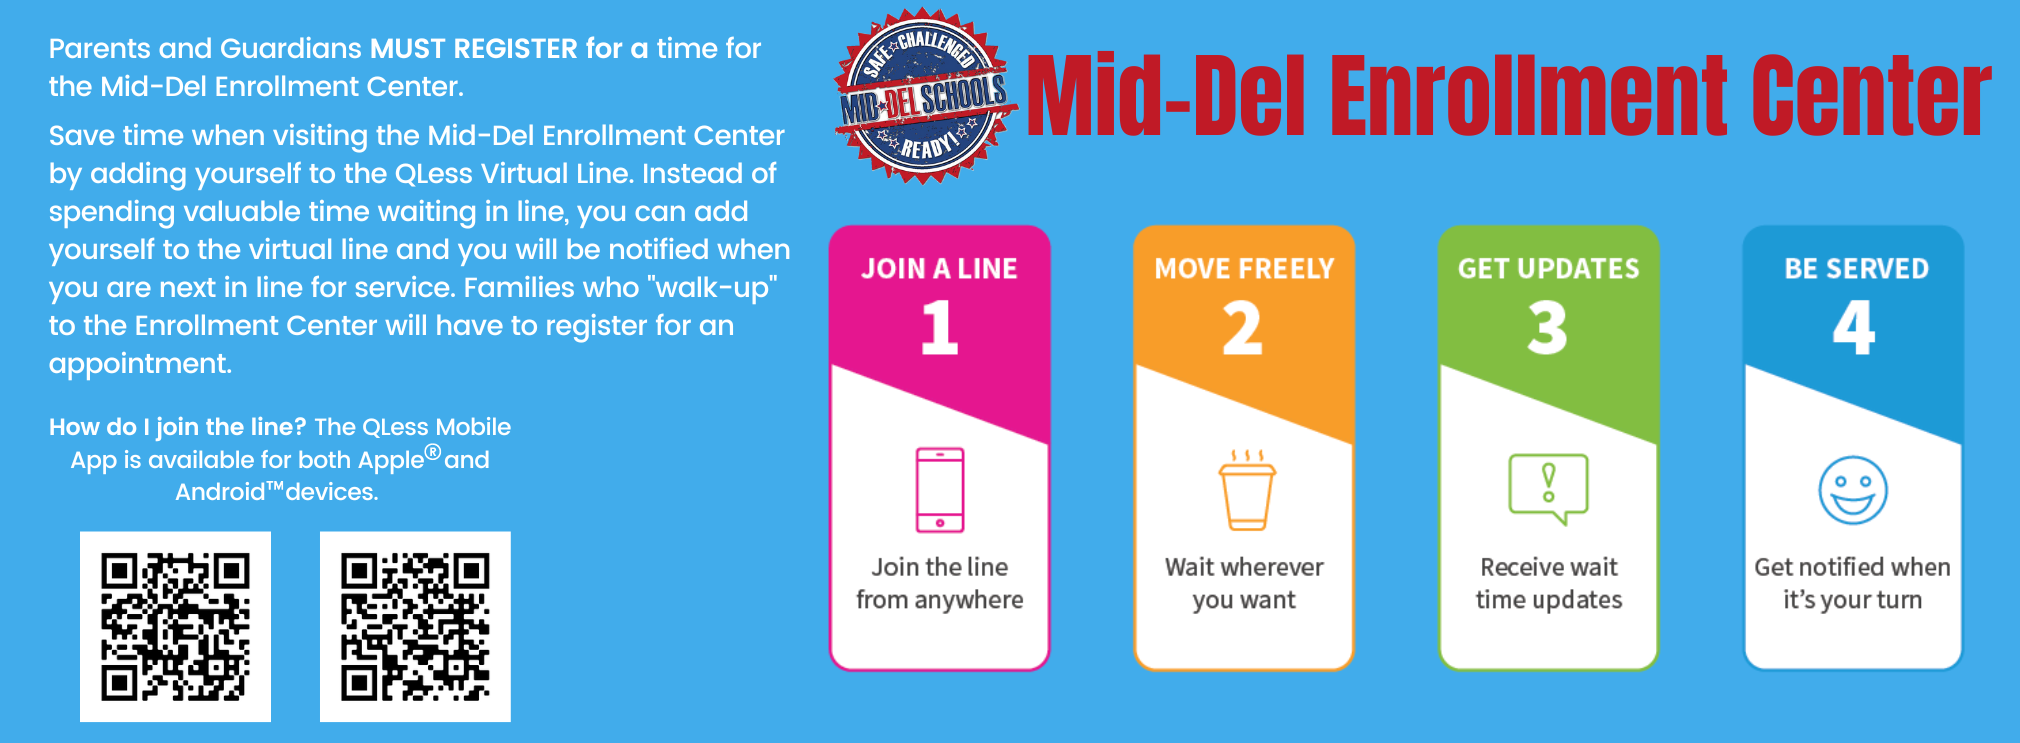 Mid-Del Enrollment Center